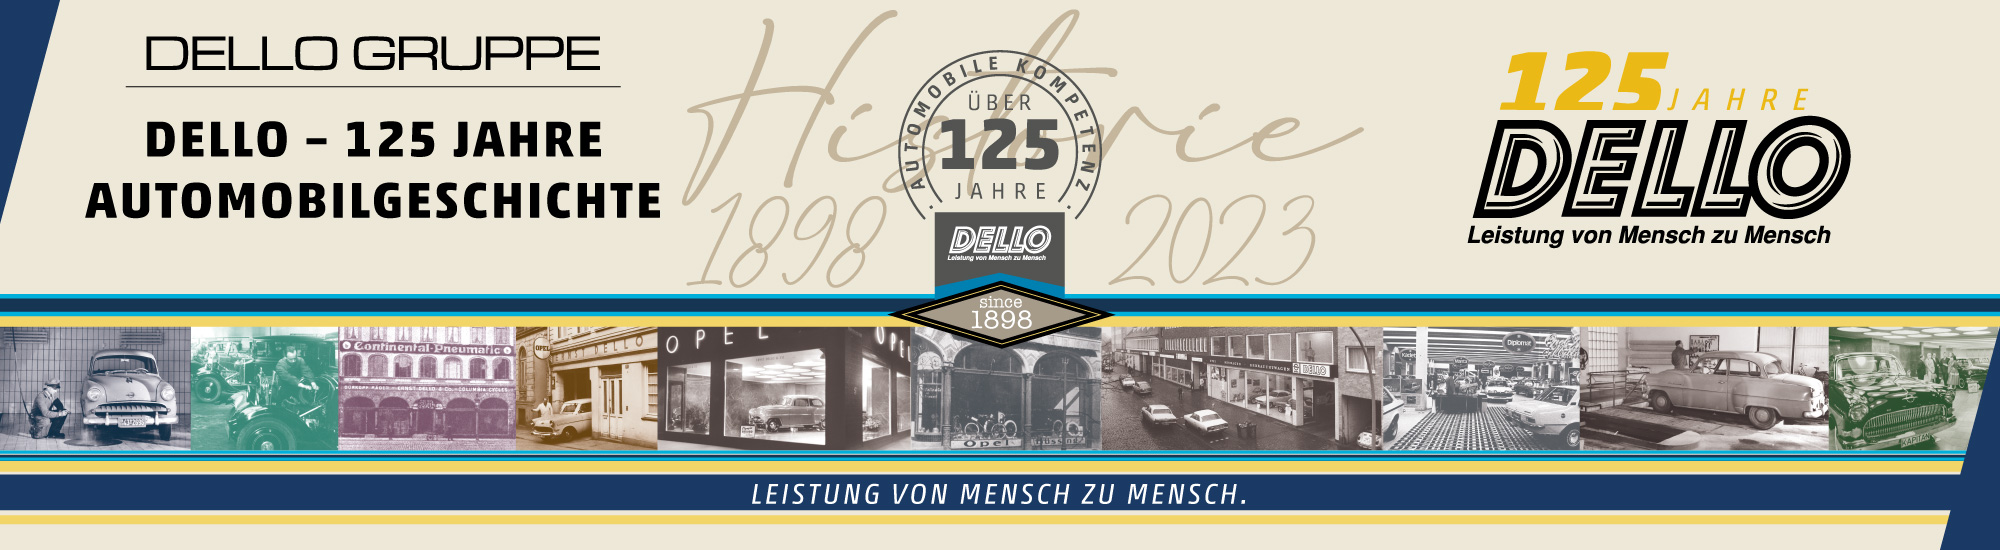 Dello - 125 Jahre Automobilgeschichte